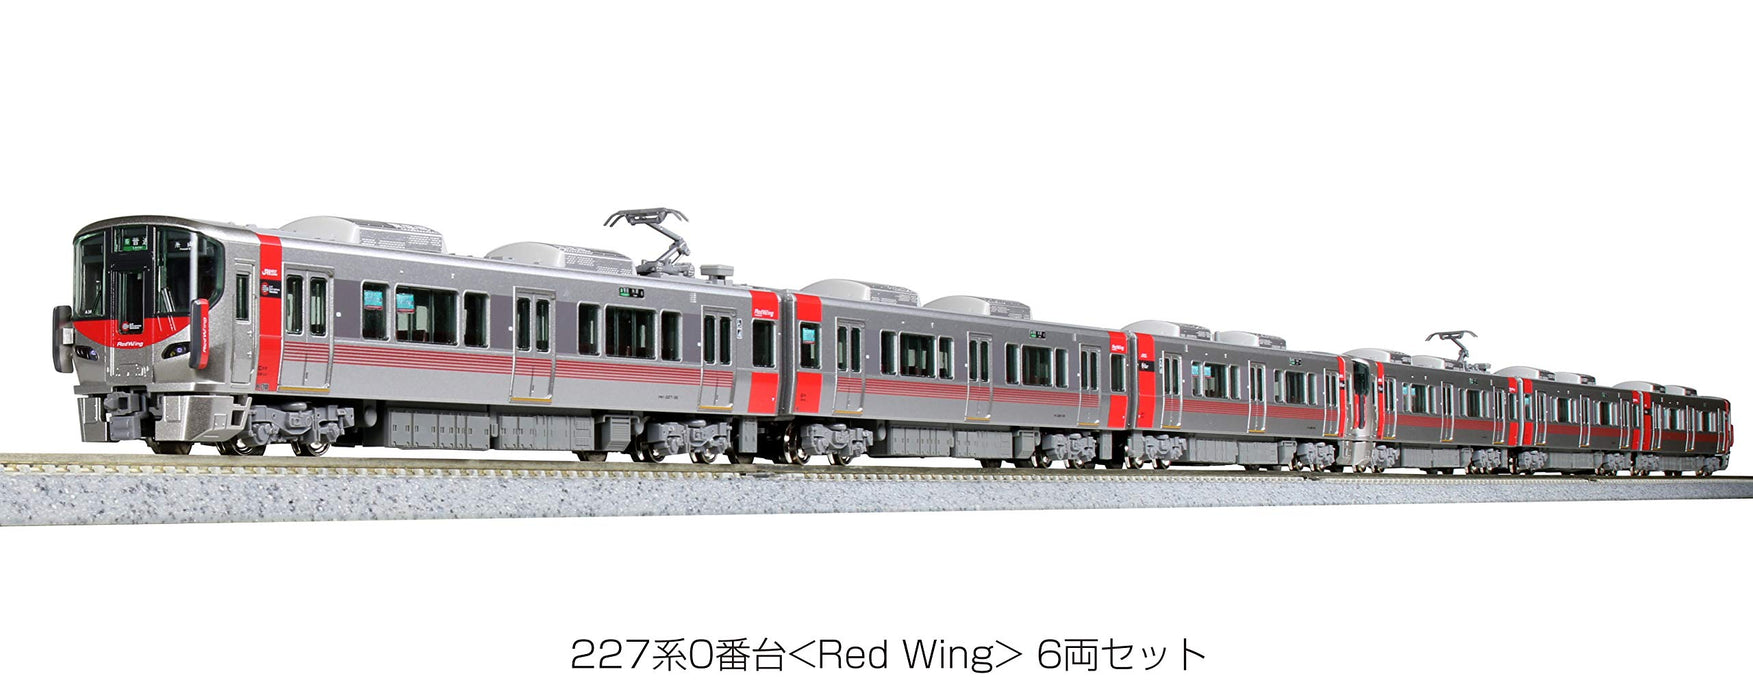 Kato N Gauge 6-Car Set 227 Series 0 Red Wing 10-1629 Railway Train Model